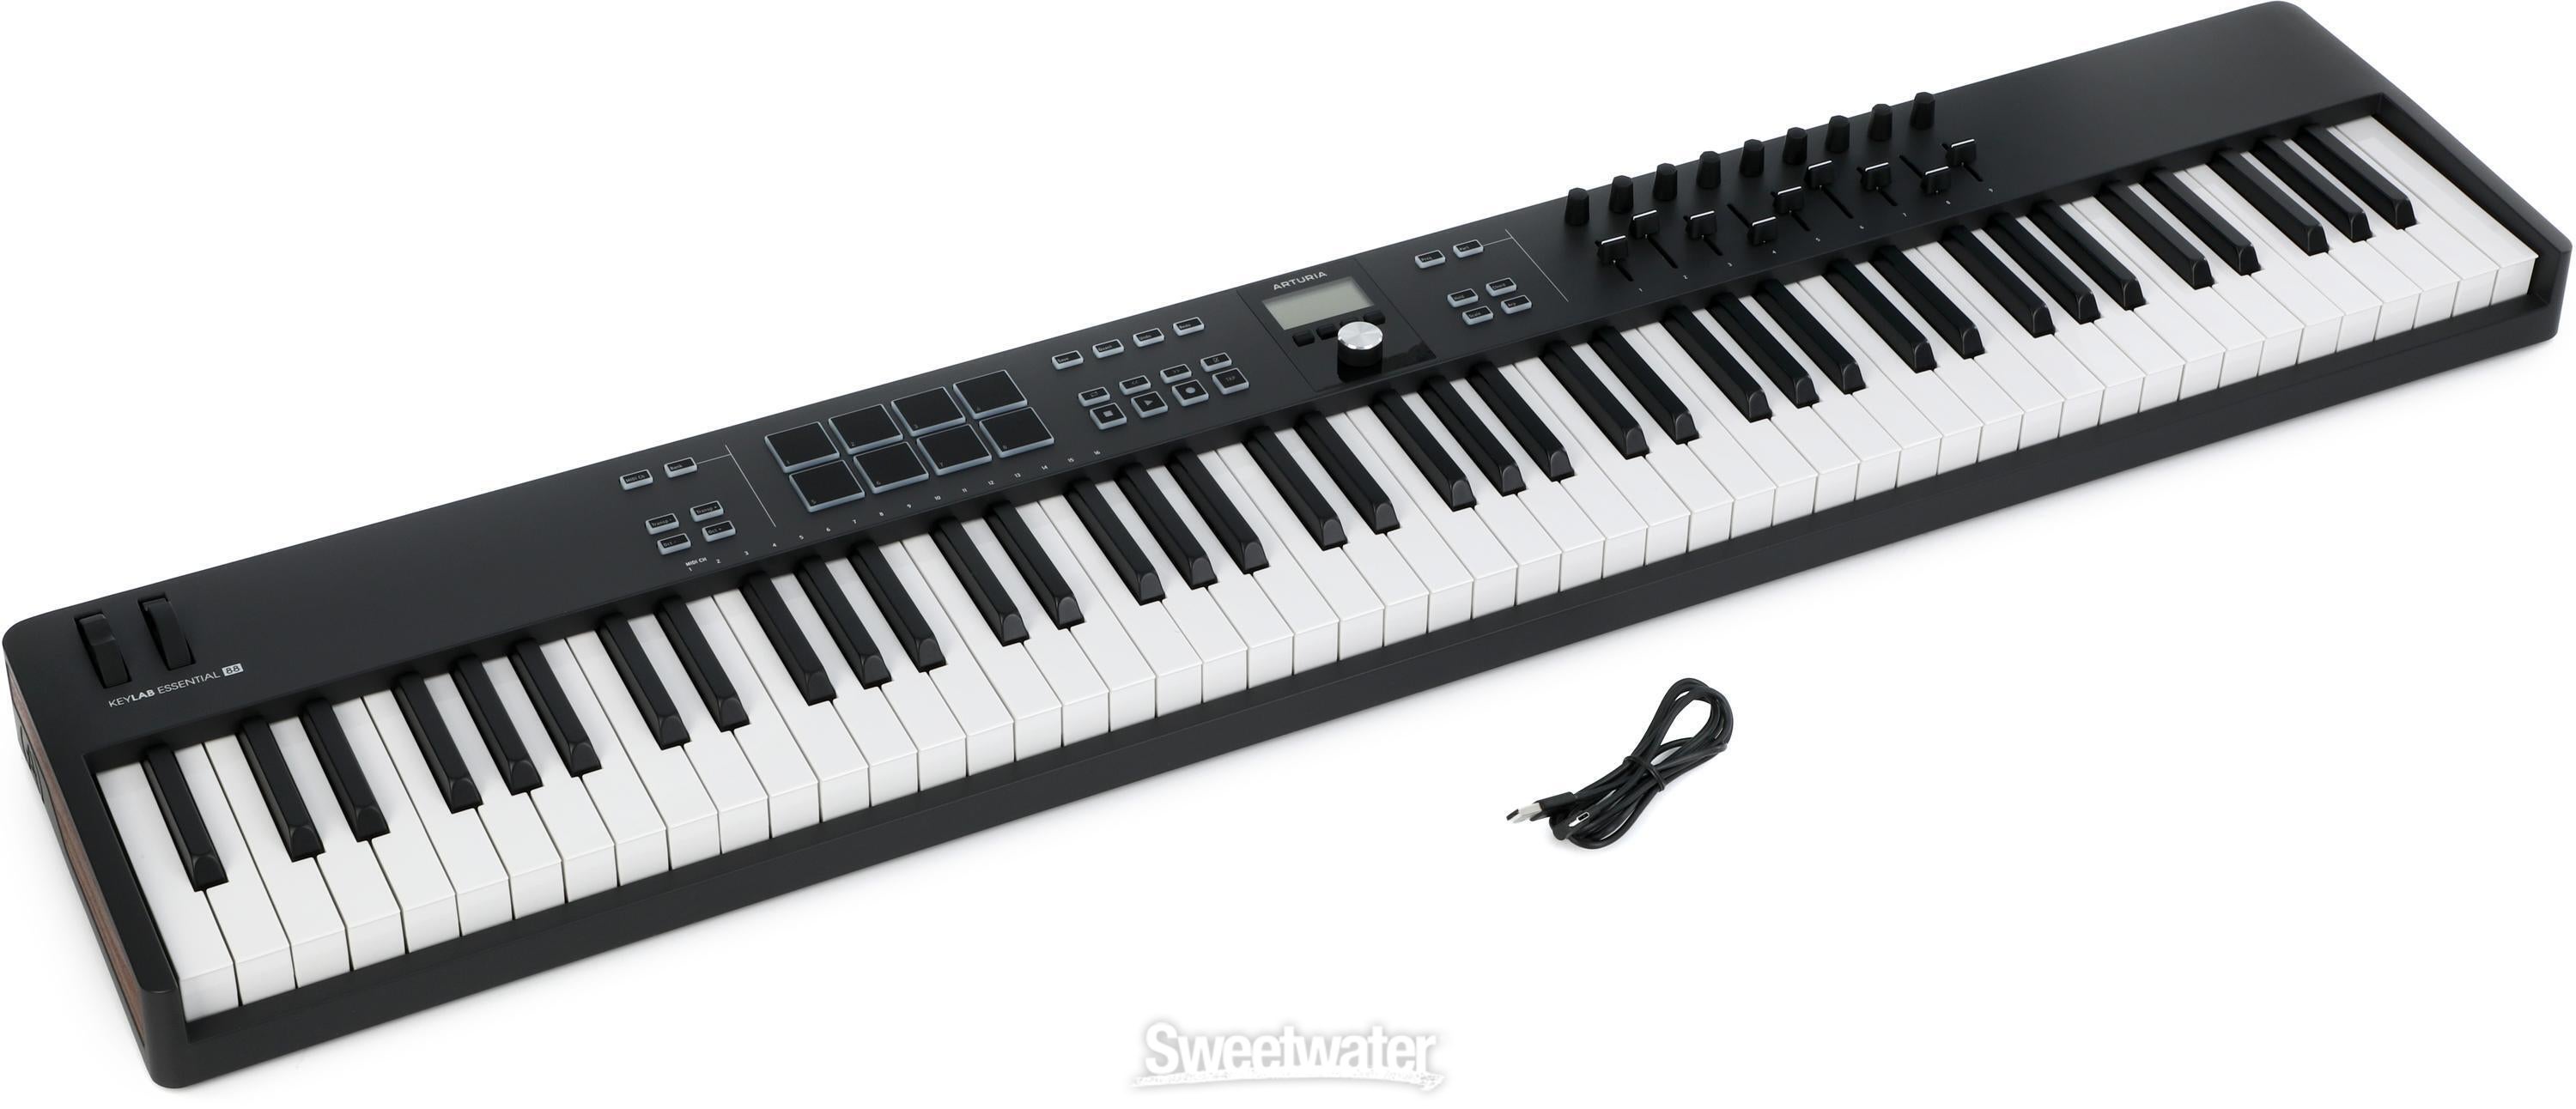 Arturia KeyLab Essential mk3 88-key Keyboard Controller - Black 